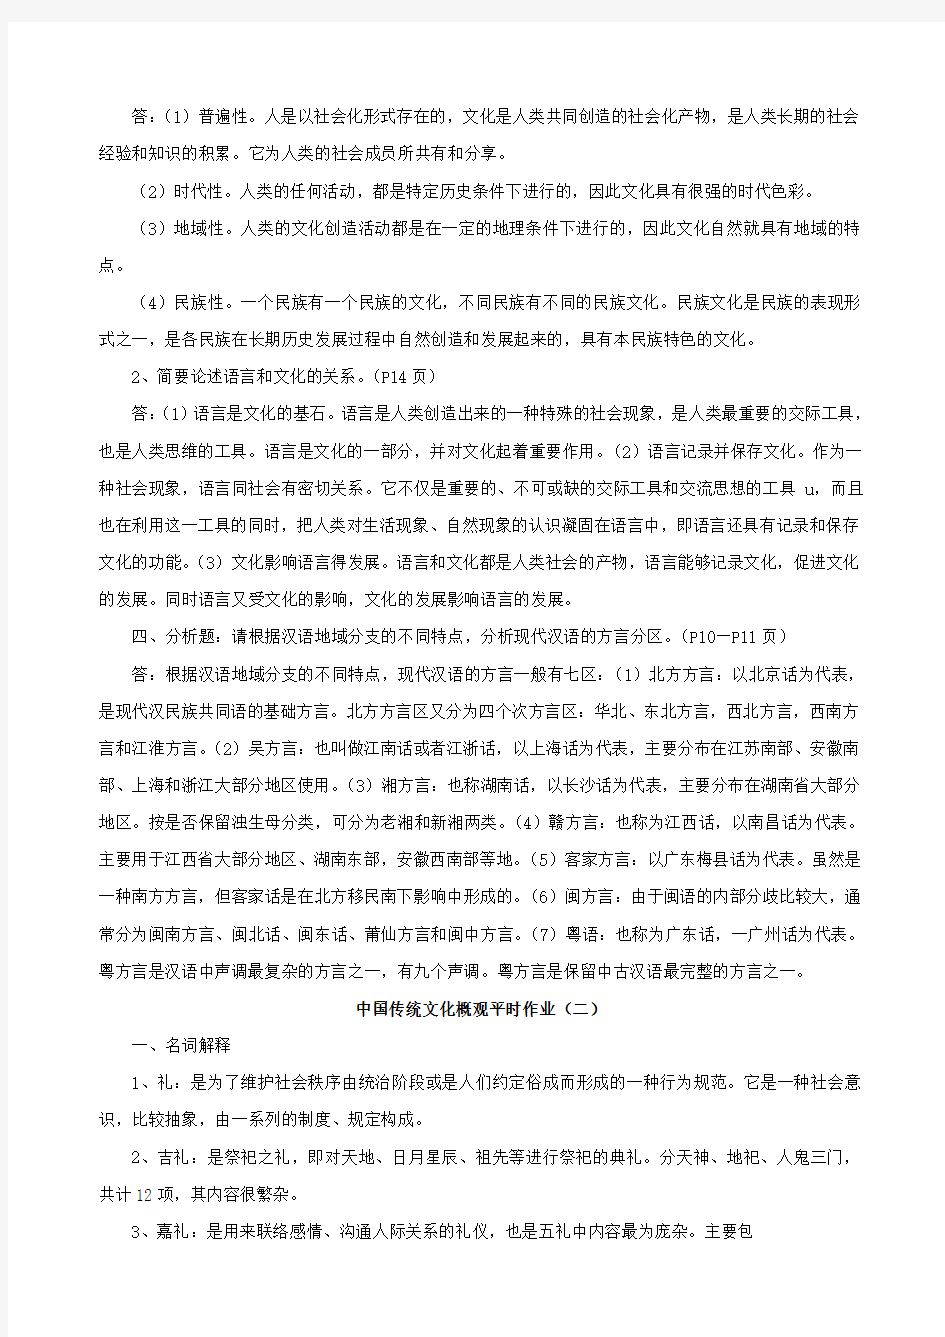 《中国传统文化概观》平时作业答案(全)